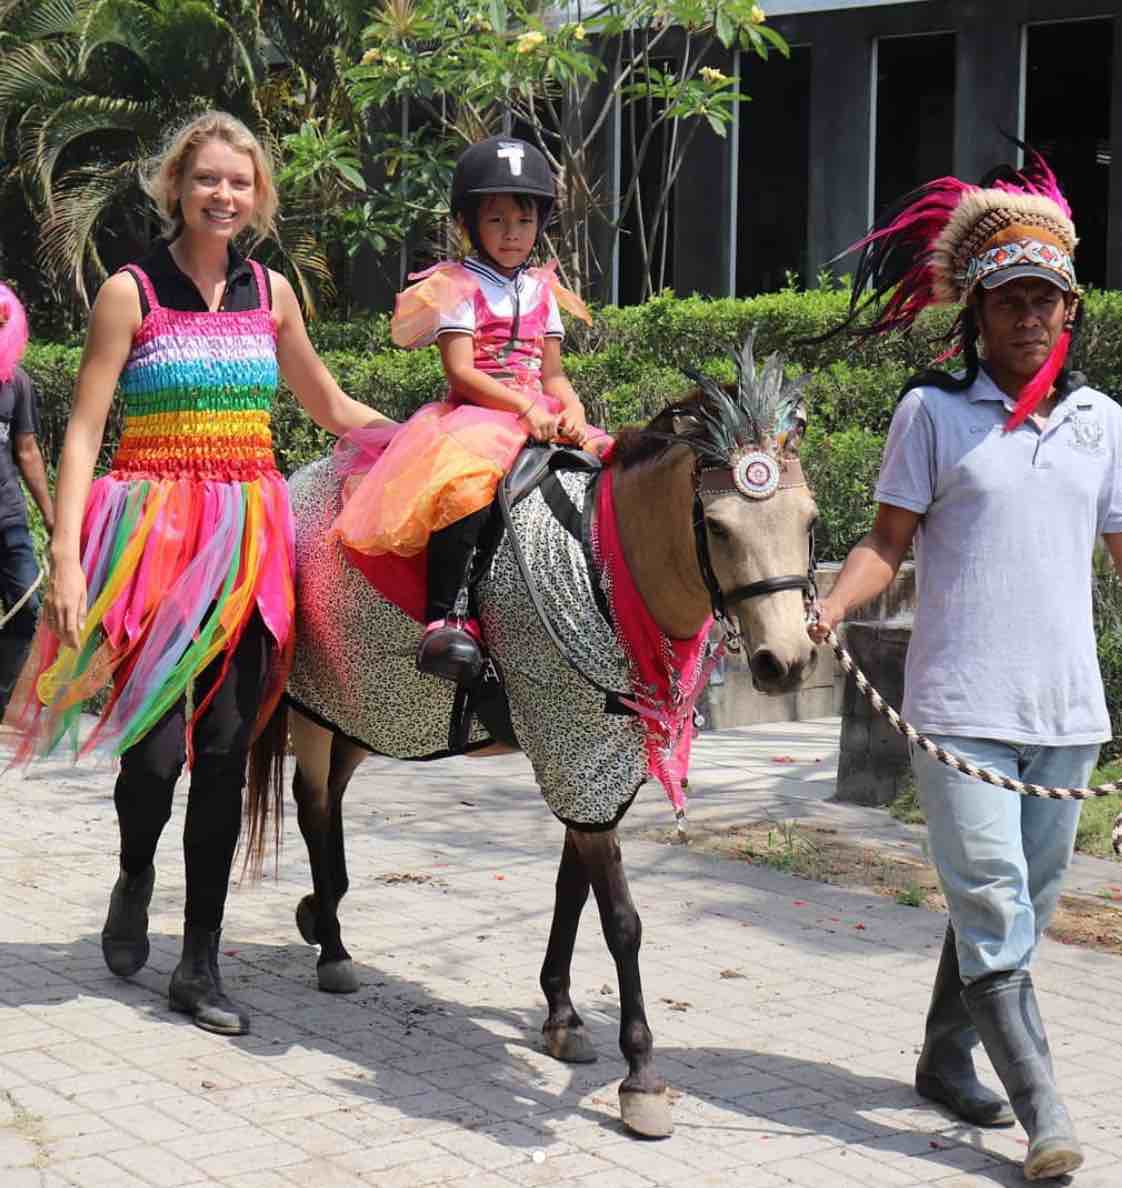 Bali Equestrian Centre